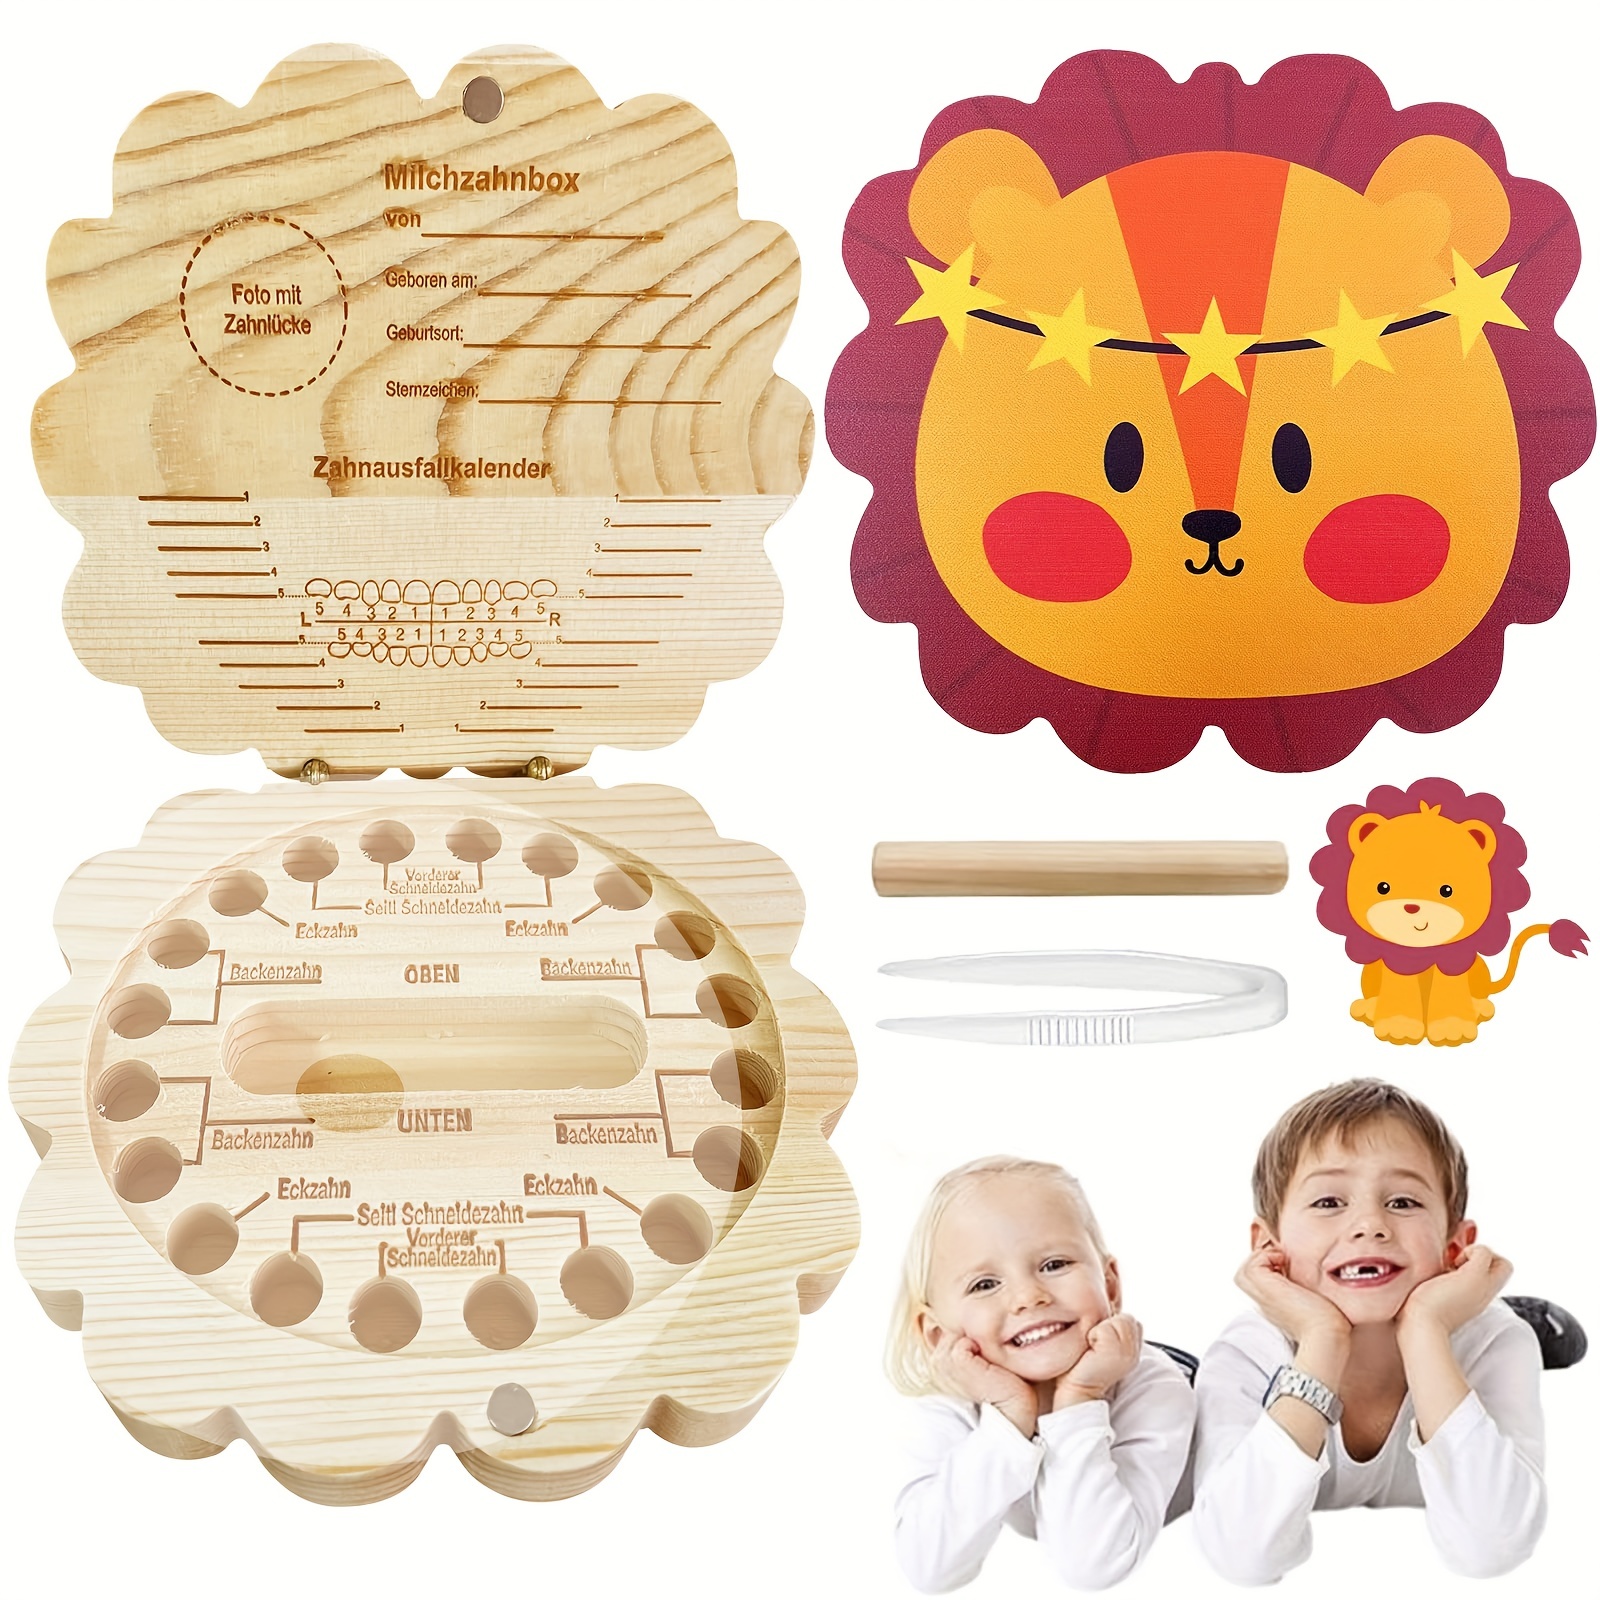  Caja de dientes de bebé, organizador de recuerdos de madera  para niños para dientes de bebé, lindo contenedor de dientes para niños con  pinzas y botella lanugo para mantener el recuerdo